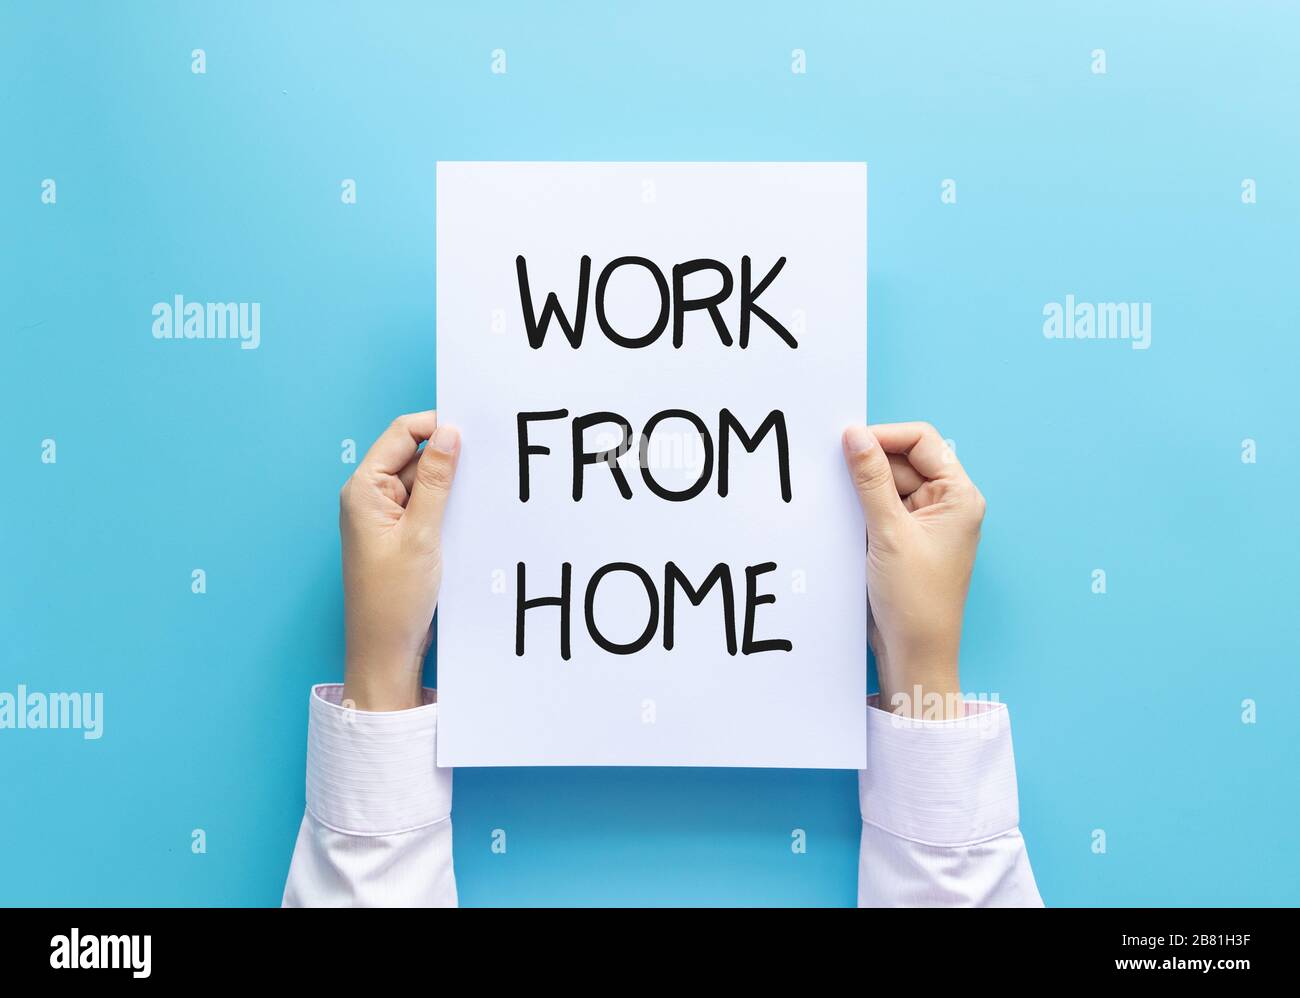 lavoro da casa concetto. donna mano che tiene carta con parola lavoro da casa isolato su sfondo blu, studio girato. Foto Stock